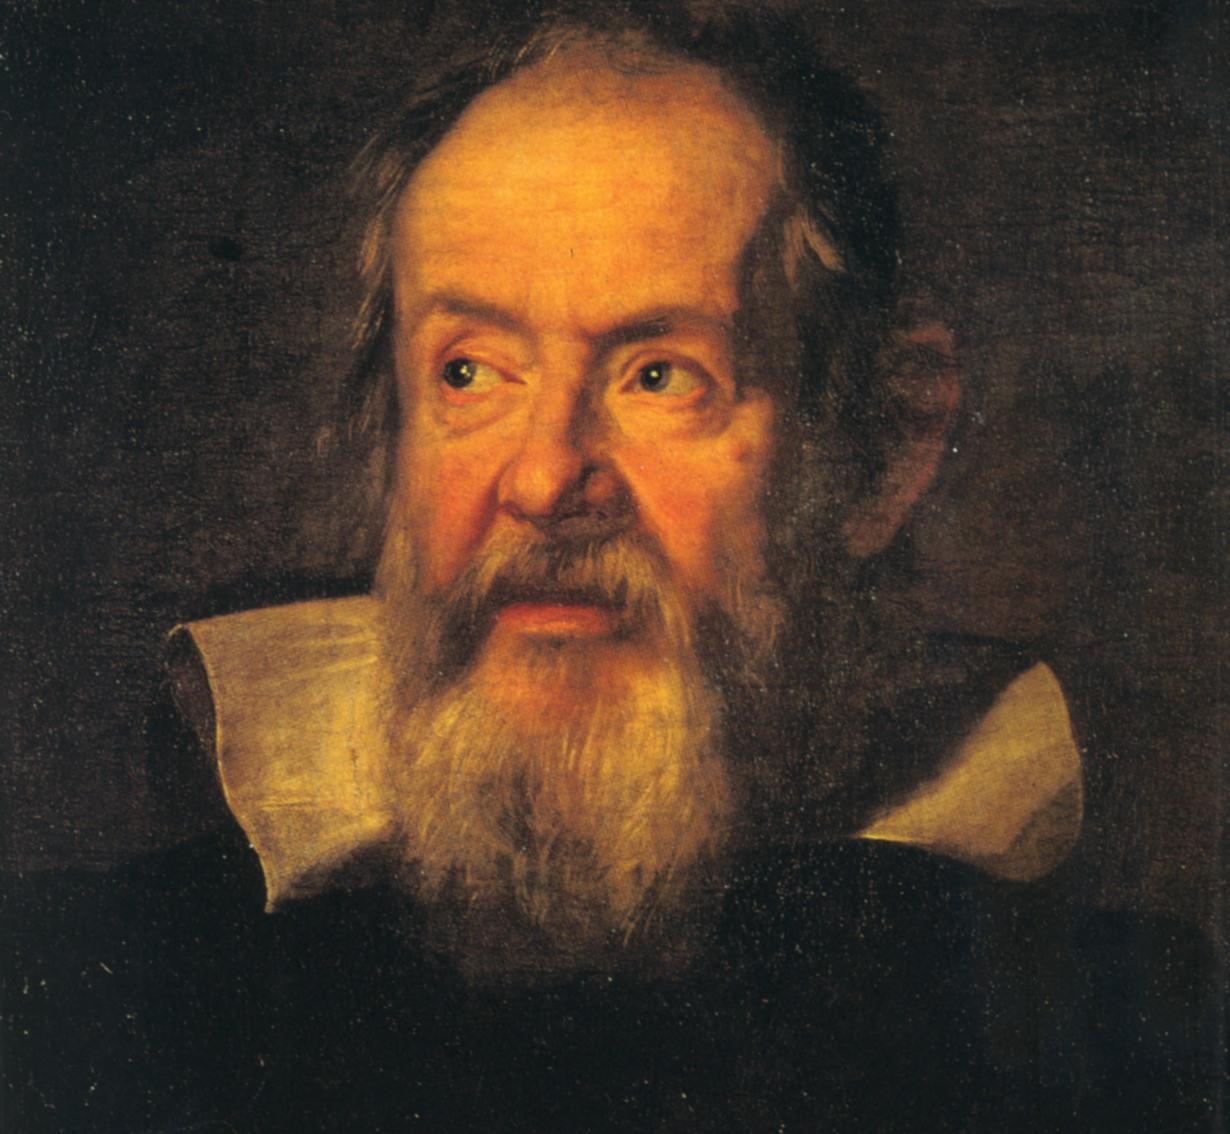 Galileu Galilei escondeu descobertas durante o Renascimento. Entenda! 